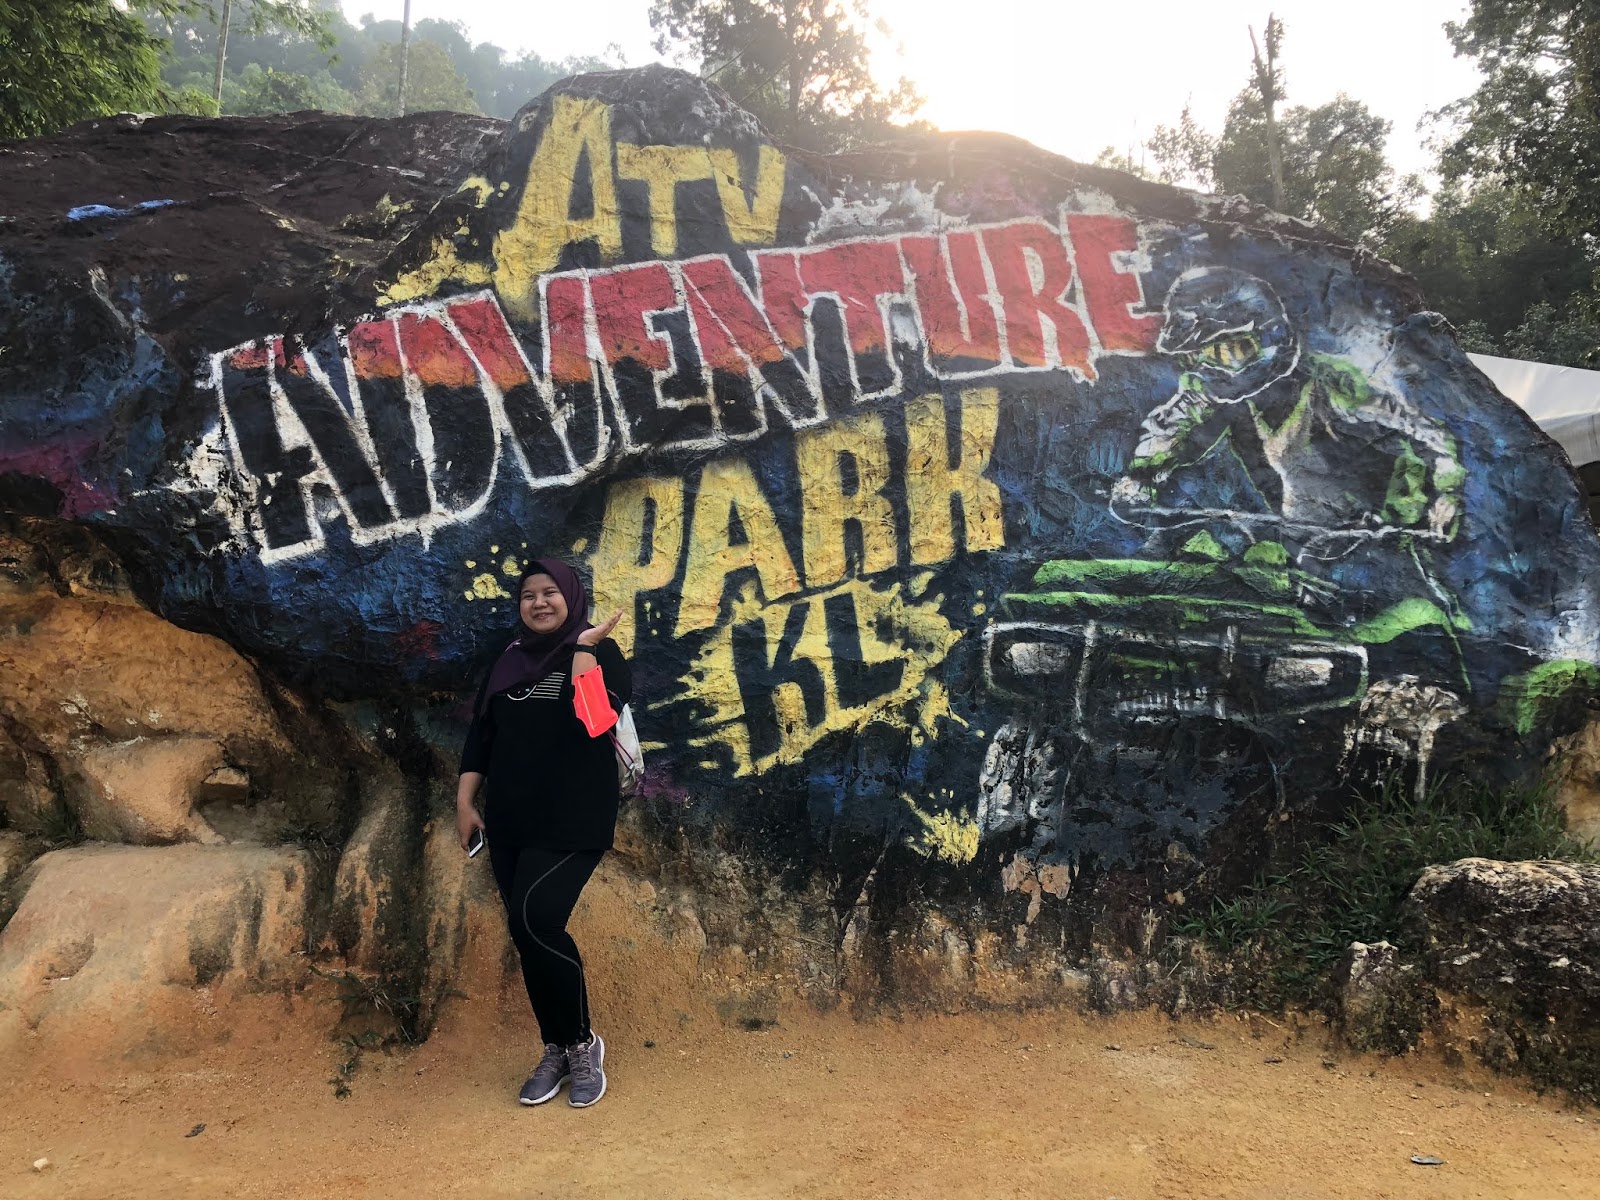 ATV Ride at ATV Adventure Park Kuala Lumpur! - Mysara Newrie